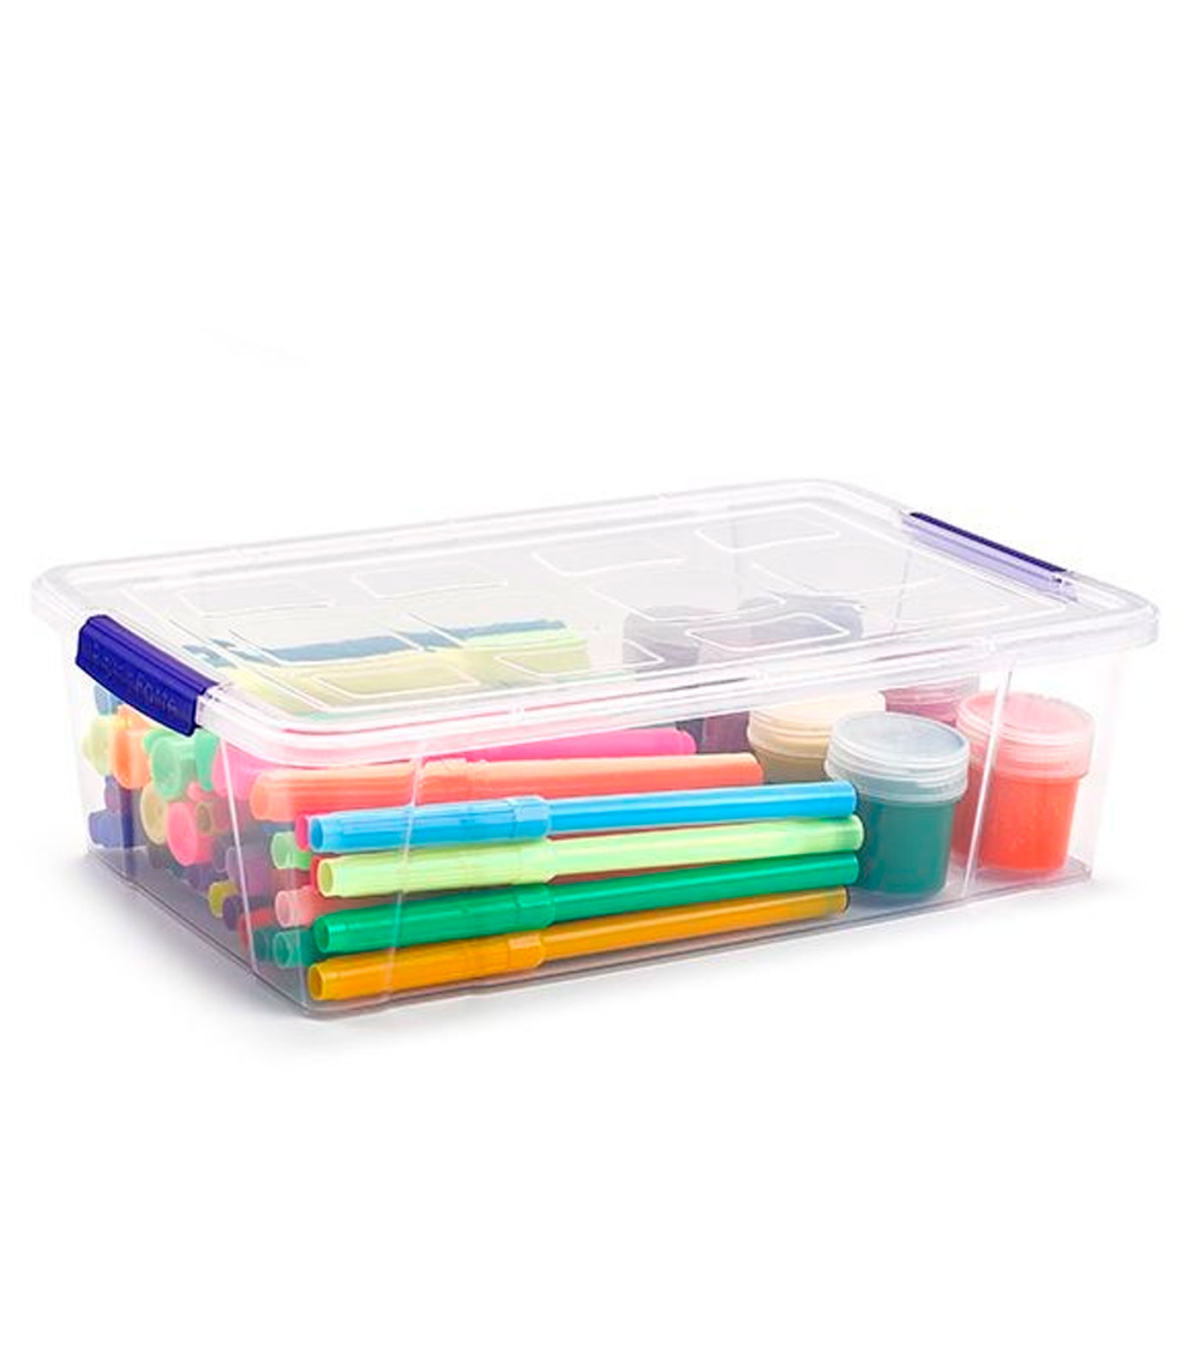 Caja de plástico con tapa - N.o 28 transparente - cajón de almacenaje, ordenación, almacenamiento, objetos - 7,5 litros, 24 x 33 x 15,5 cm